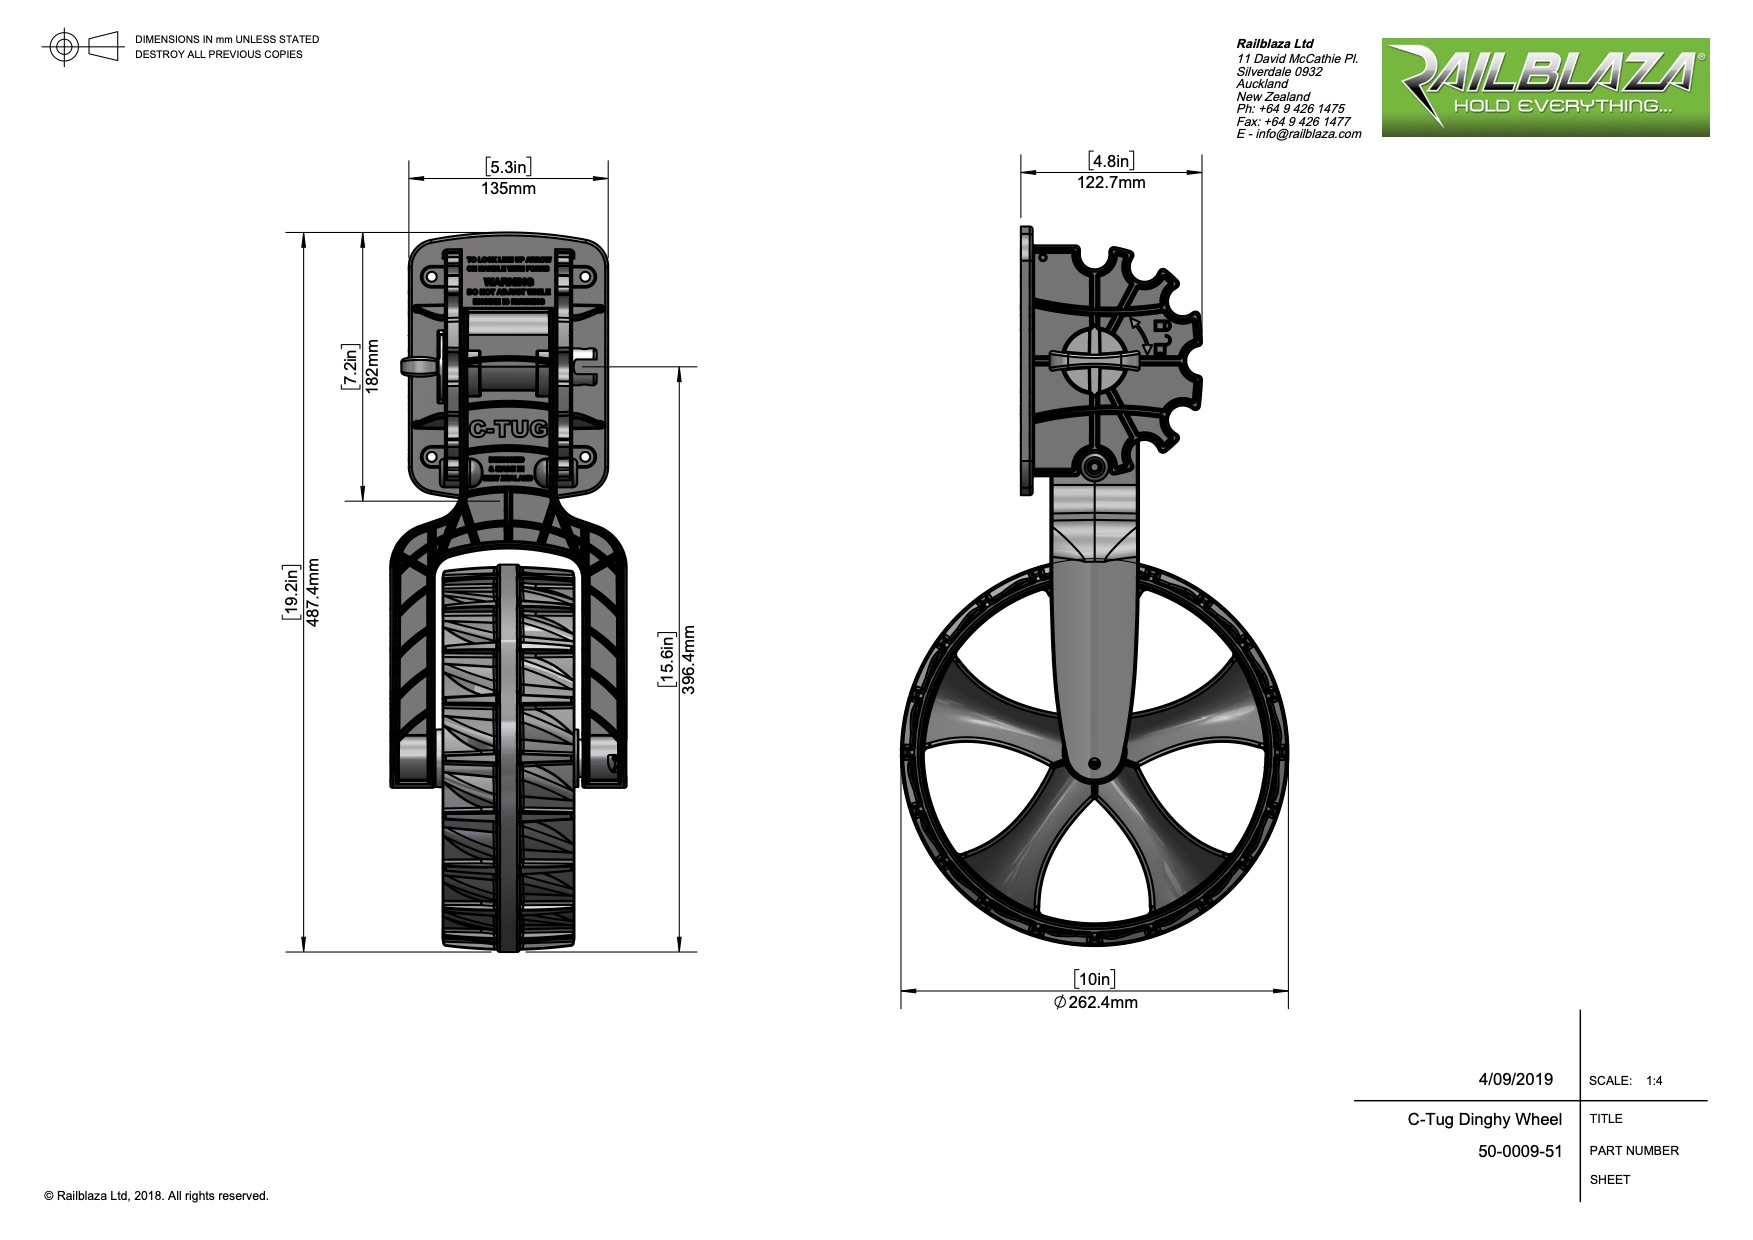 Dinghy-Wheels-RAILBLAZA-C-Tug-Dinghy-Wheels-Dimensioned-dwg-2116_120003.jpg